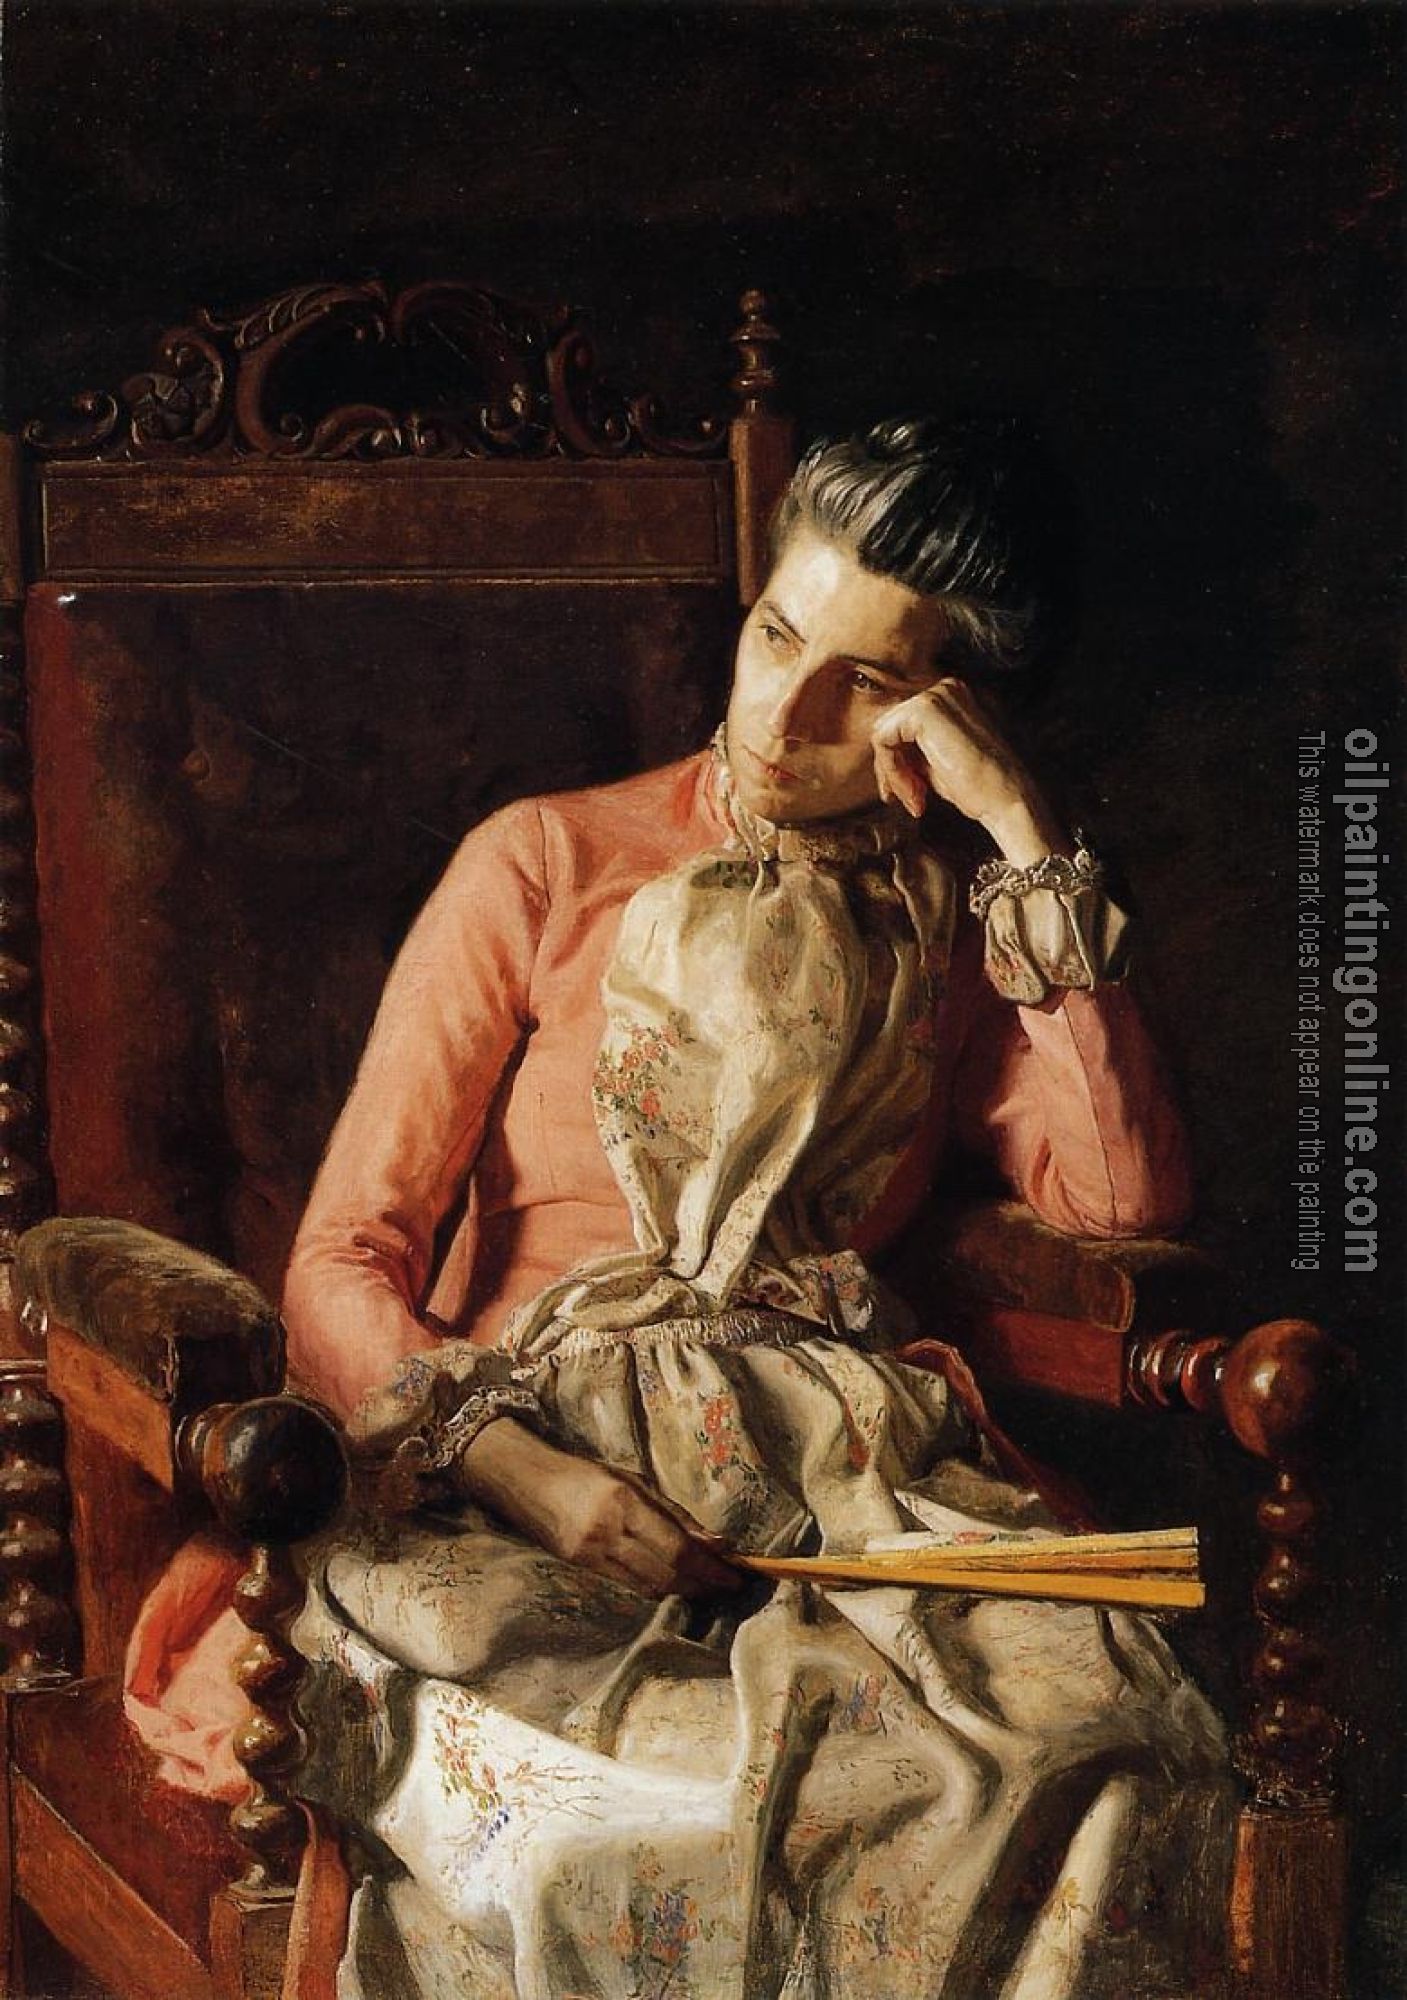 Eakins, Thomas - Portrait of Amelia Van Buren